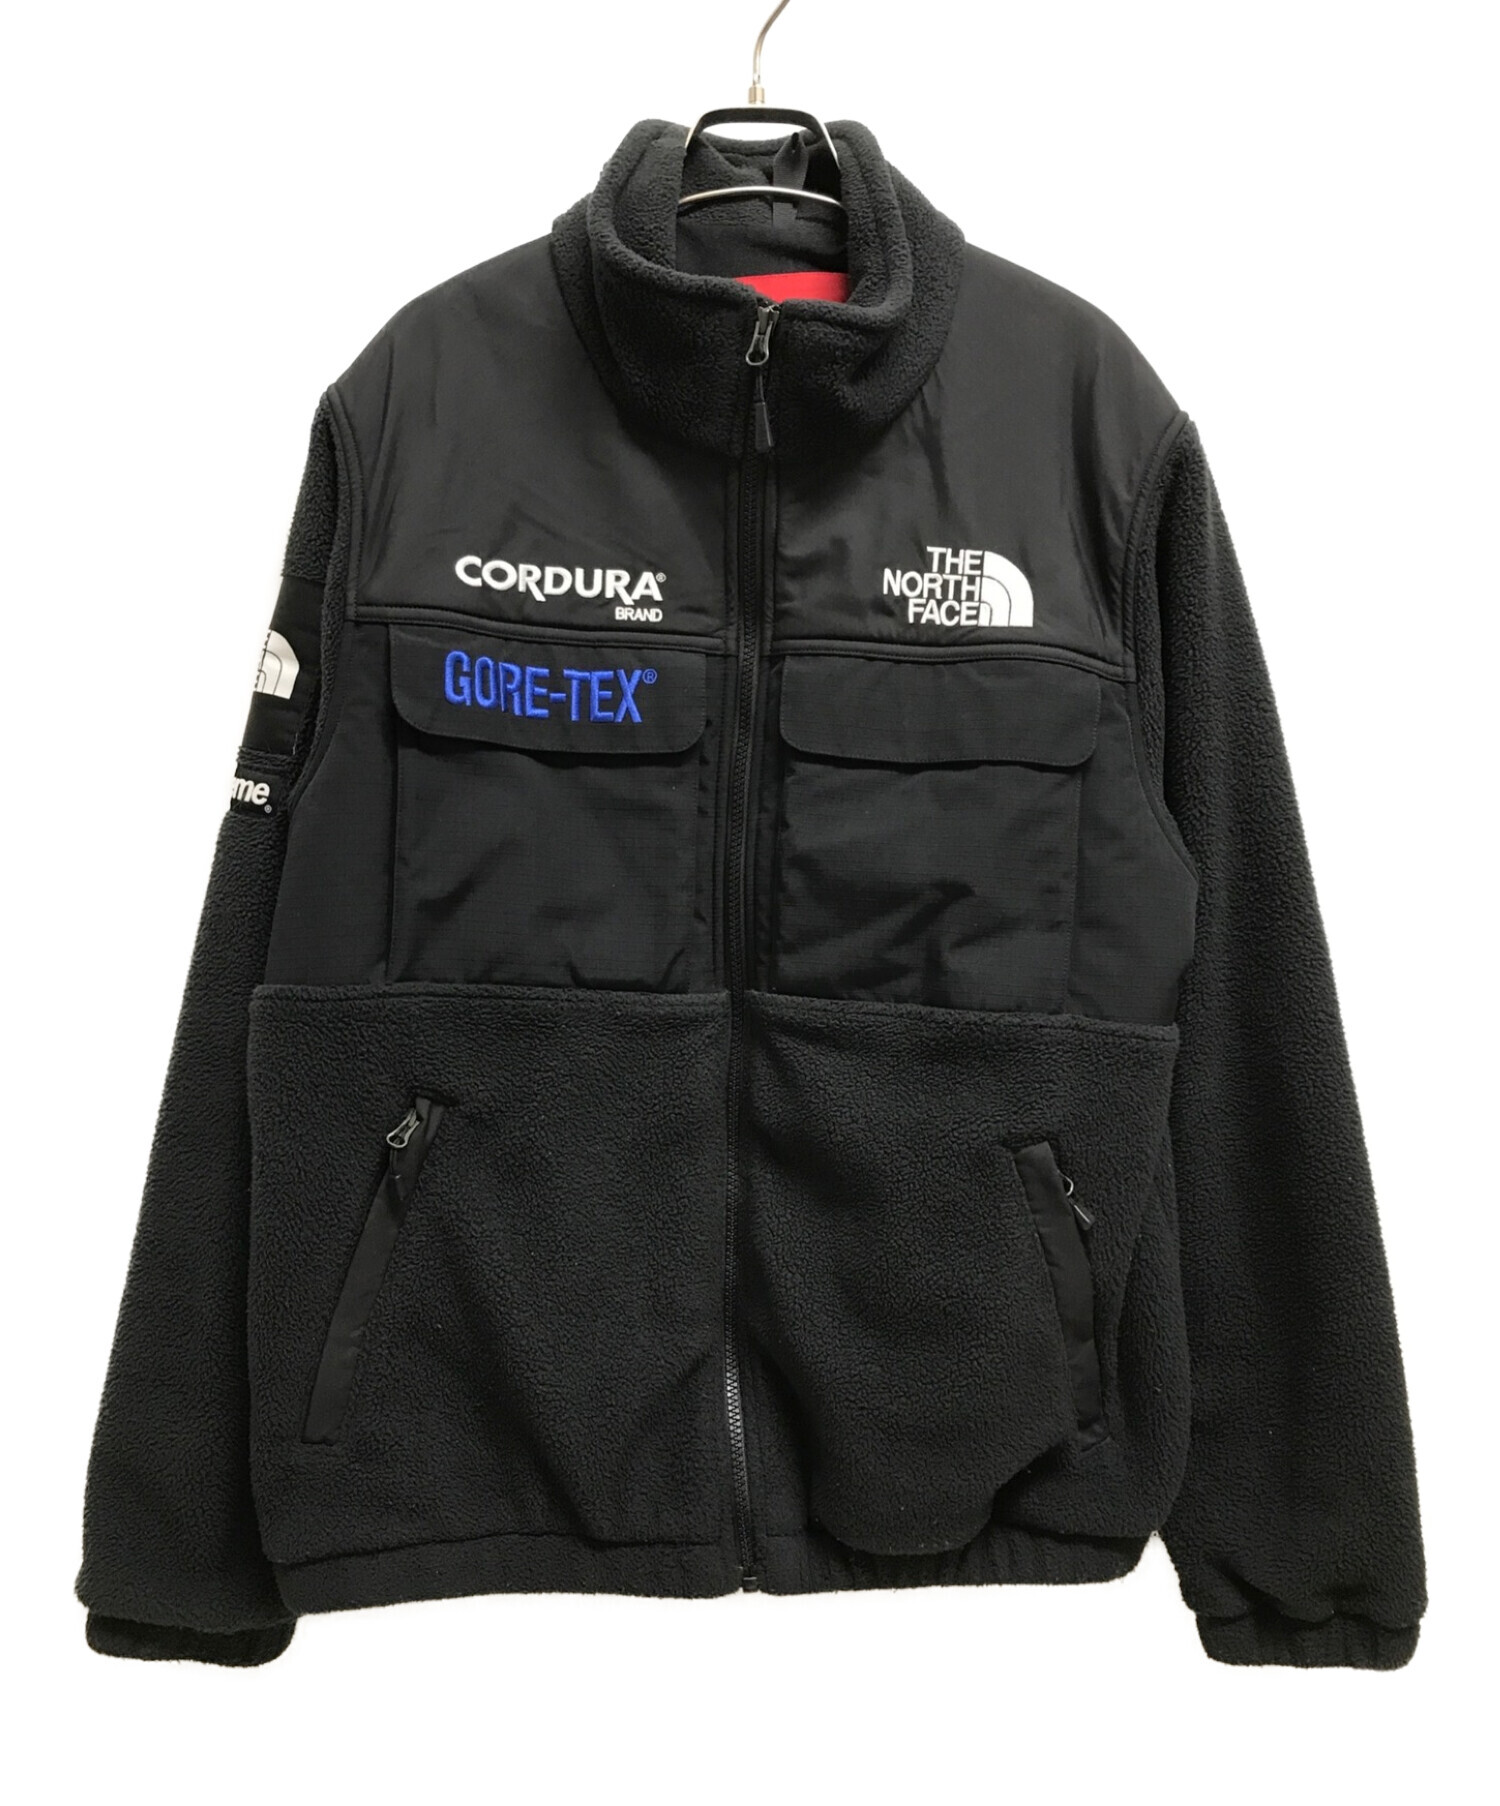 THE NORTH FACE×Supreme (ザノースフェイス×シュプリーム) Expedition Fleece Jacket ブラック サイズ:Ｍ